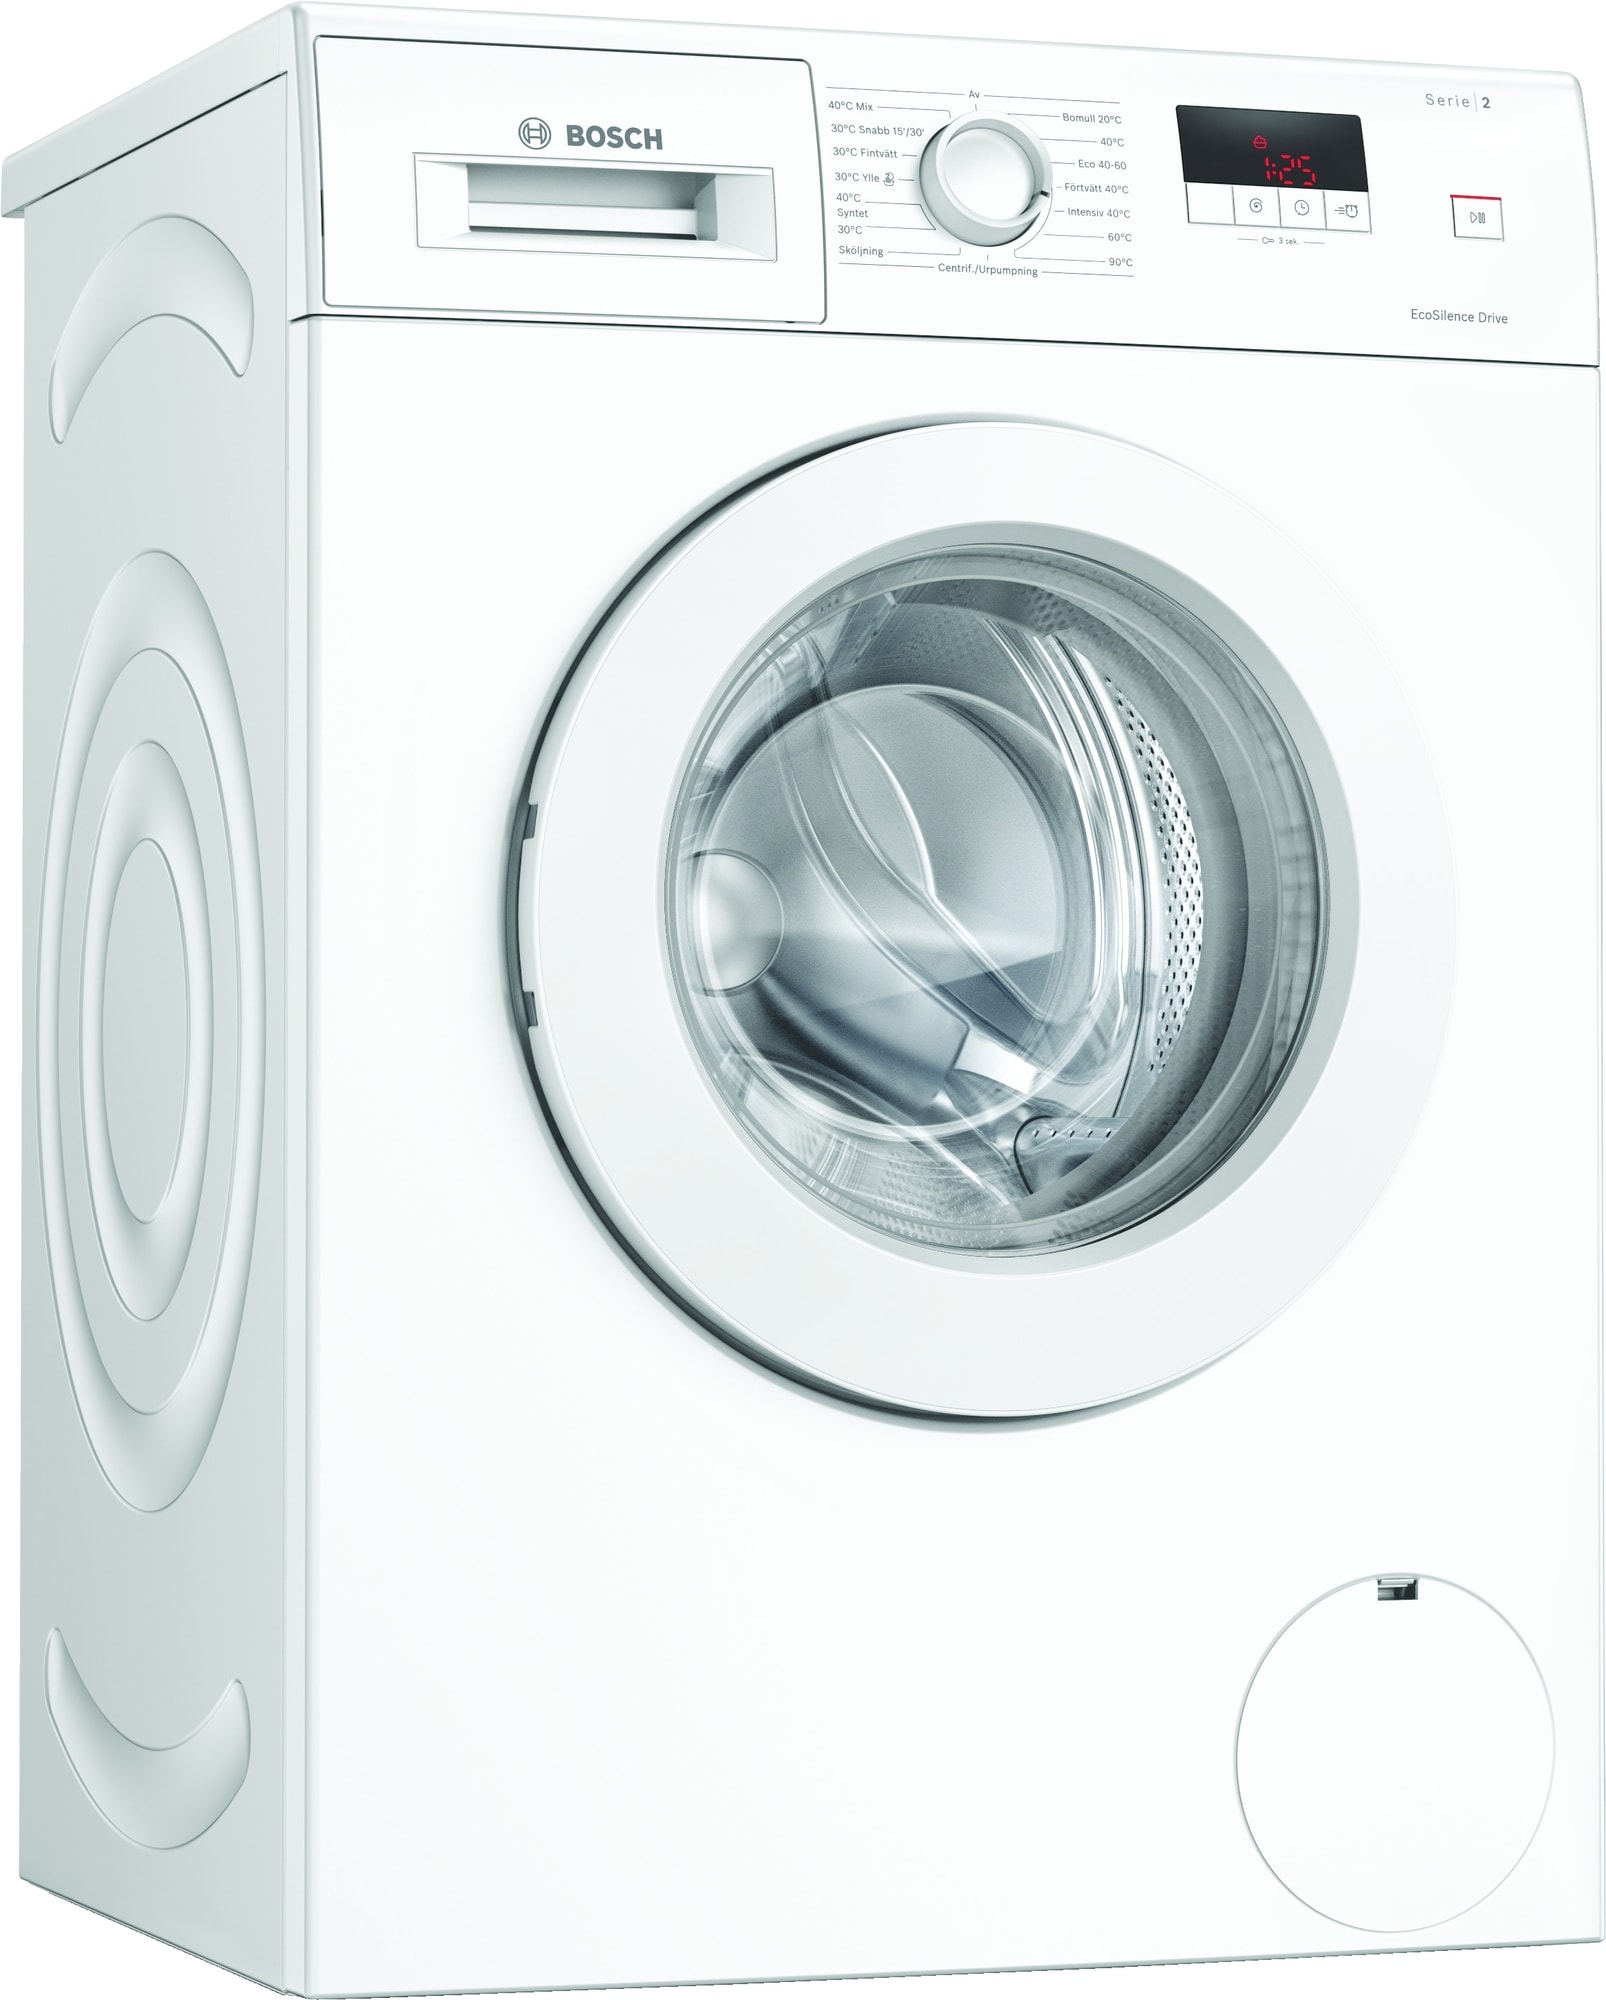 Køb Bosch Vaskemaskiner online til meget lav pris! |